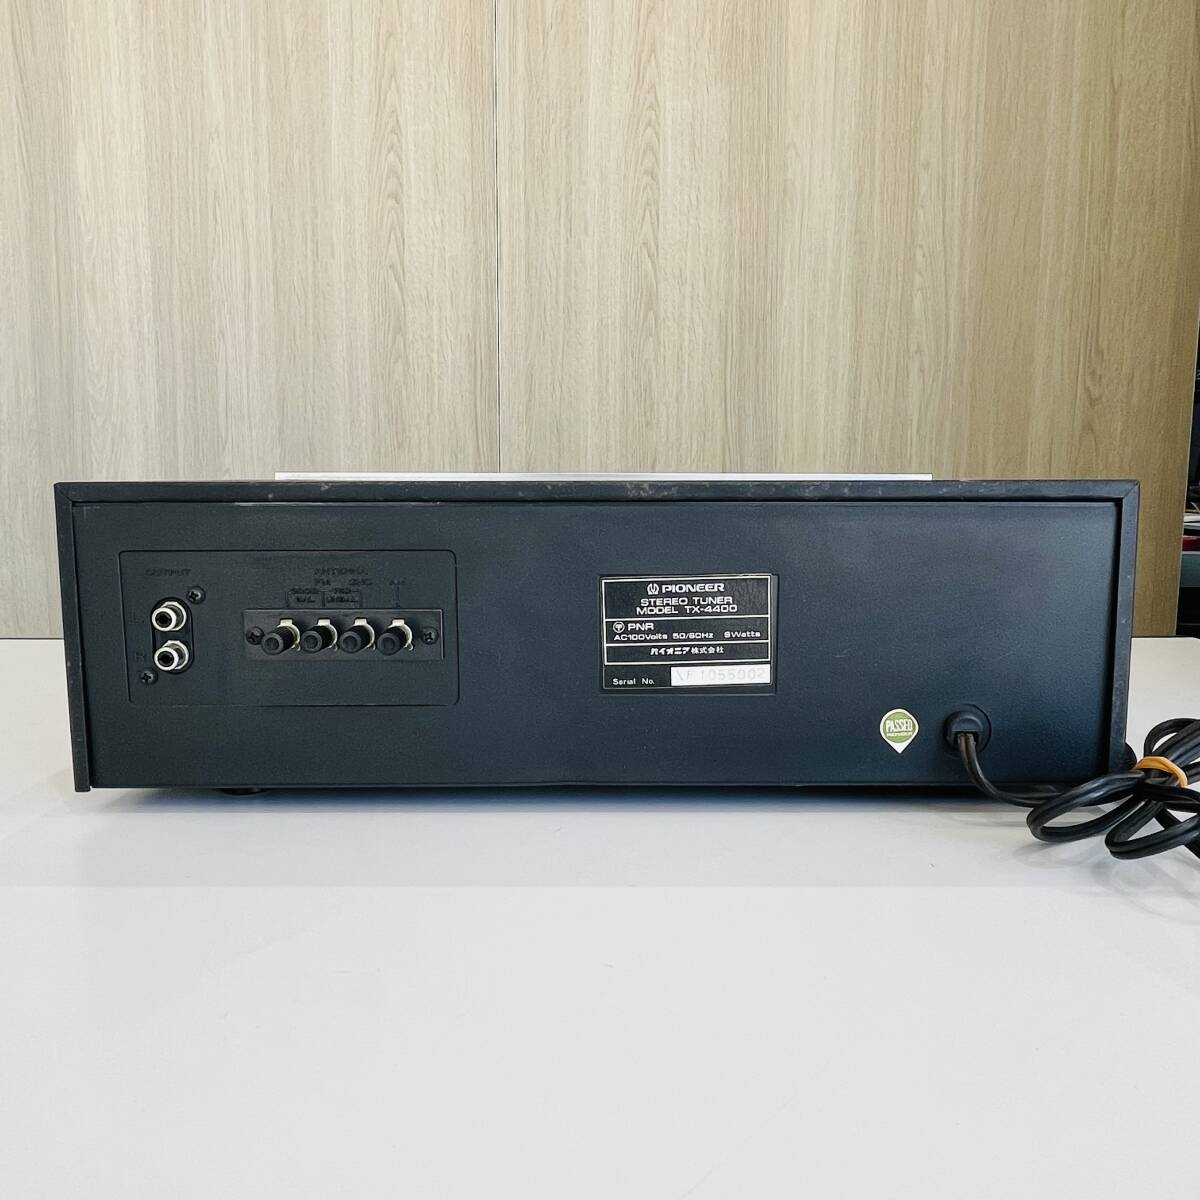 QA1878  включение питания   проверка   Pioner   стерео  тюнер TX4400 FM/AM  аудио аппаратура    Сёва  ретро   антиквариат  PIONEER ...I